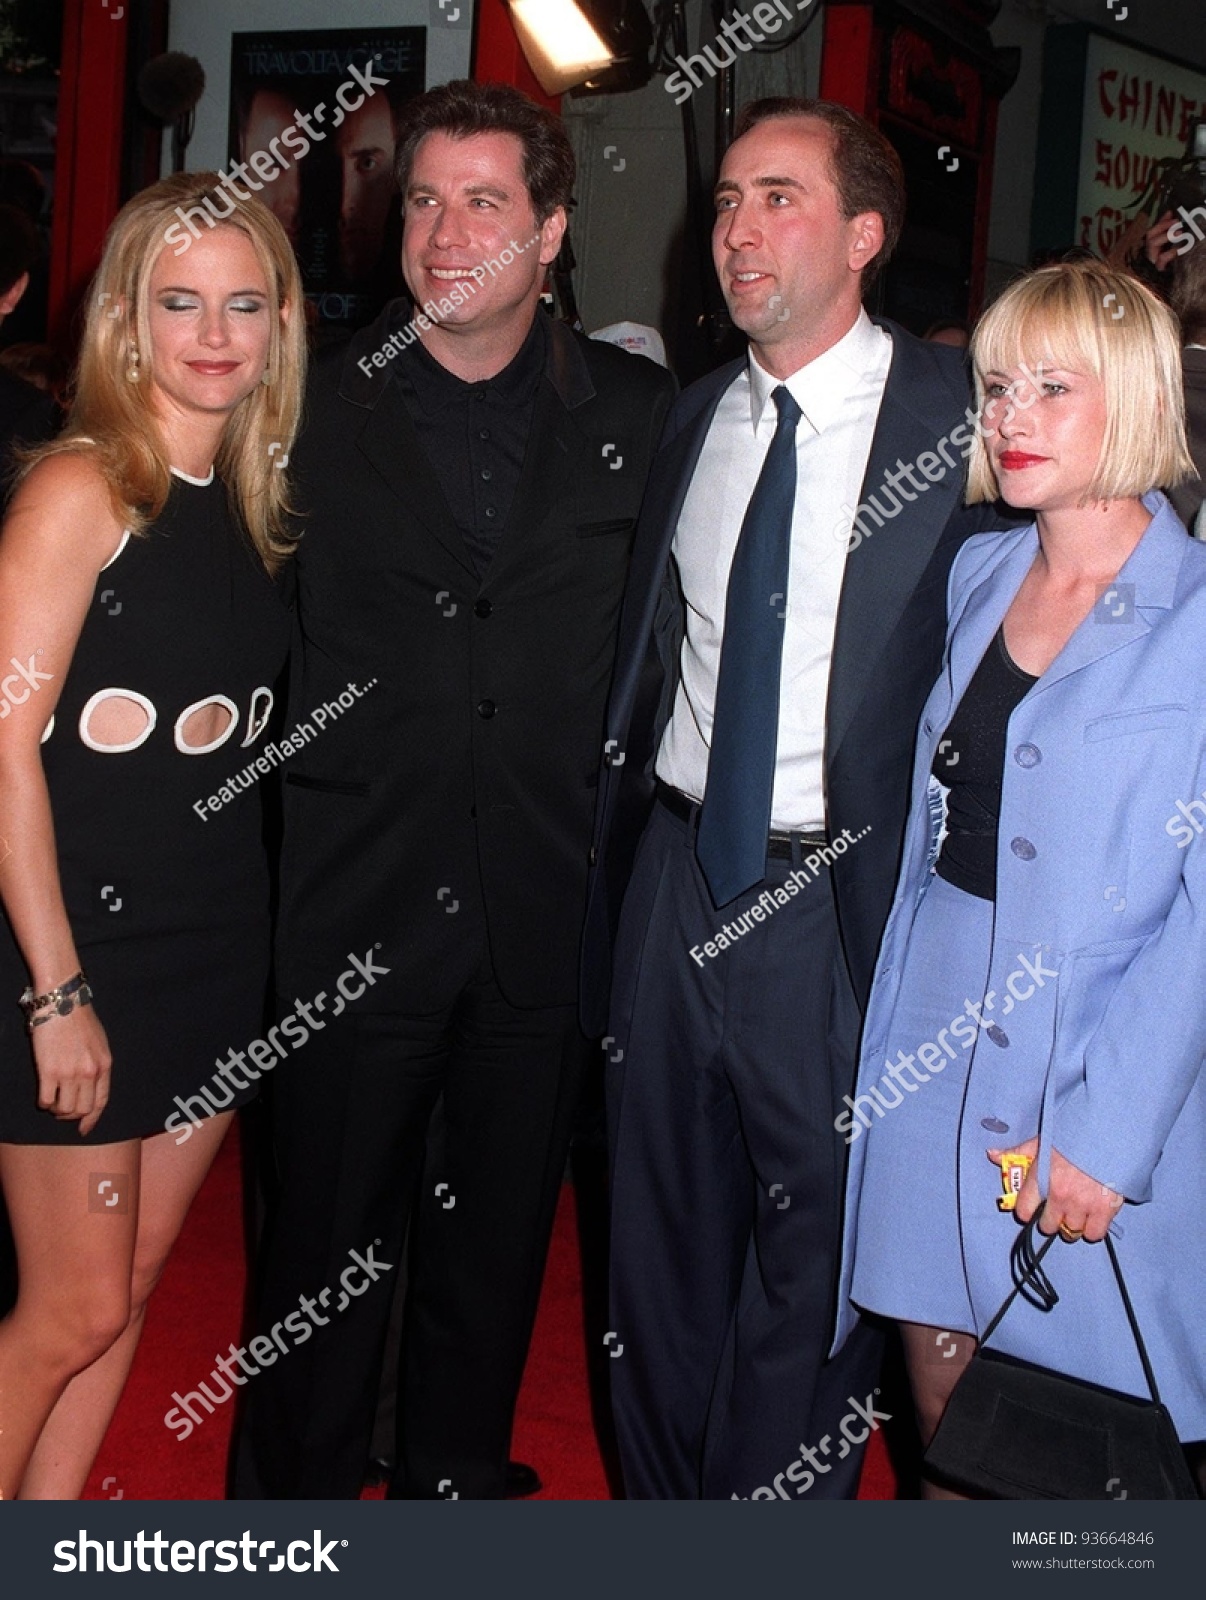 ¿Cuánto mide Nicolas Cage? - Altura - Real height Stock-photo--jun-nicolas-cage-john-travolta-kelly-preston-patricia-arquette-at-the-los-angeles-premiere-93664846